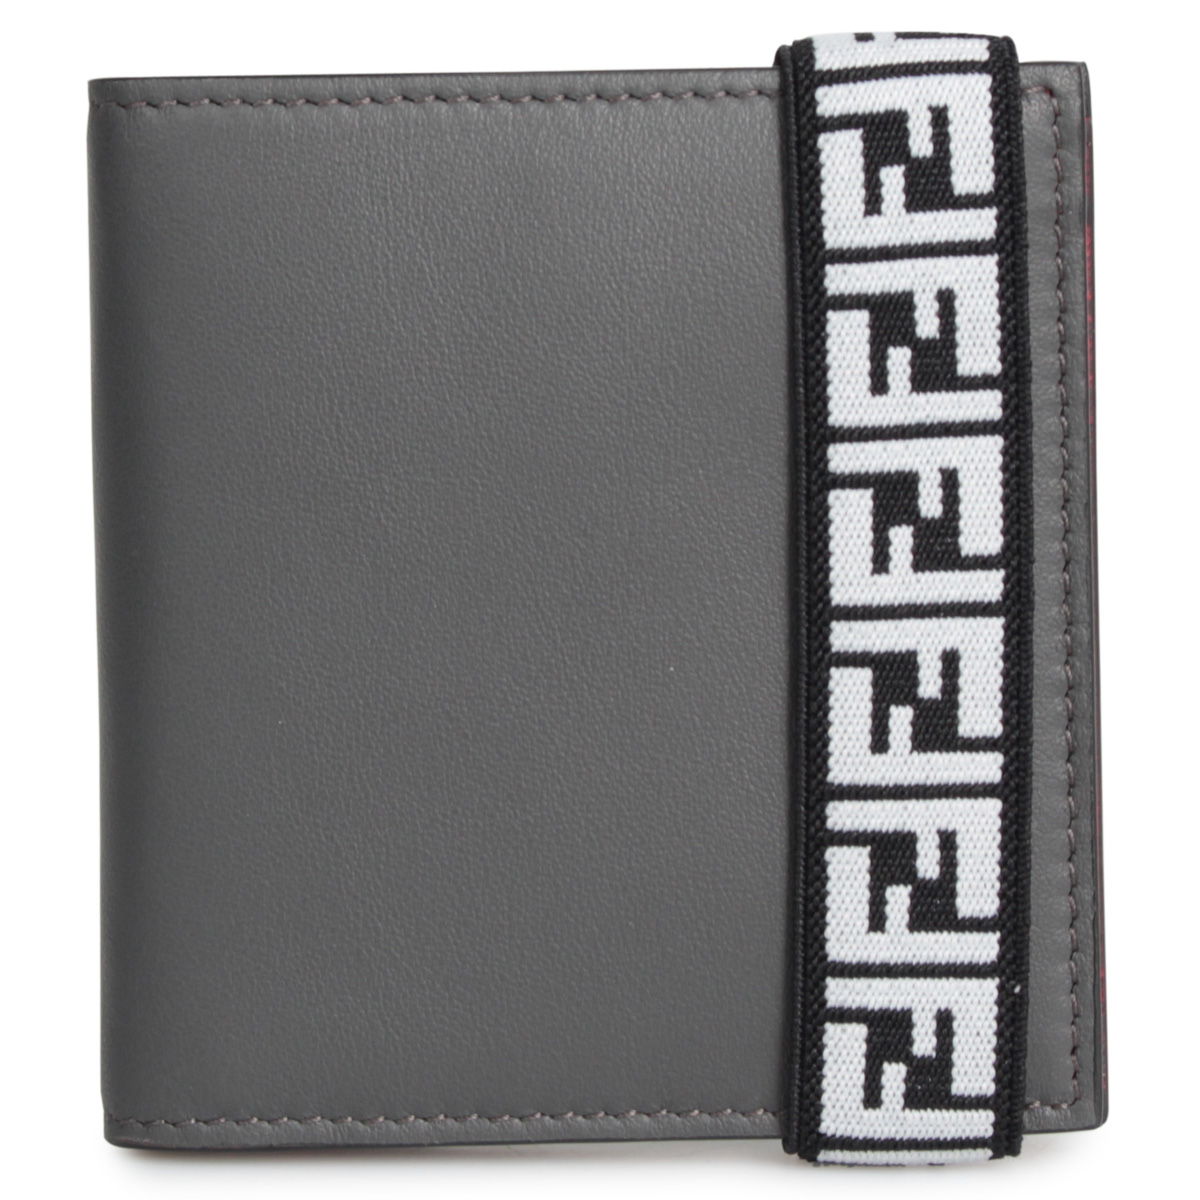 フェンディ FENDI 財布 二つ折り メンズ BI-FOLD WALLET グレー 7M0277 